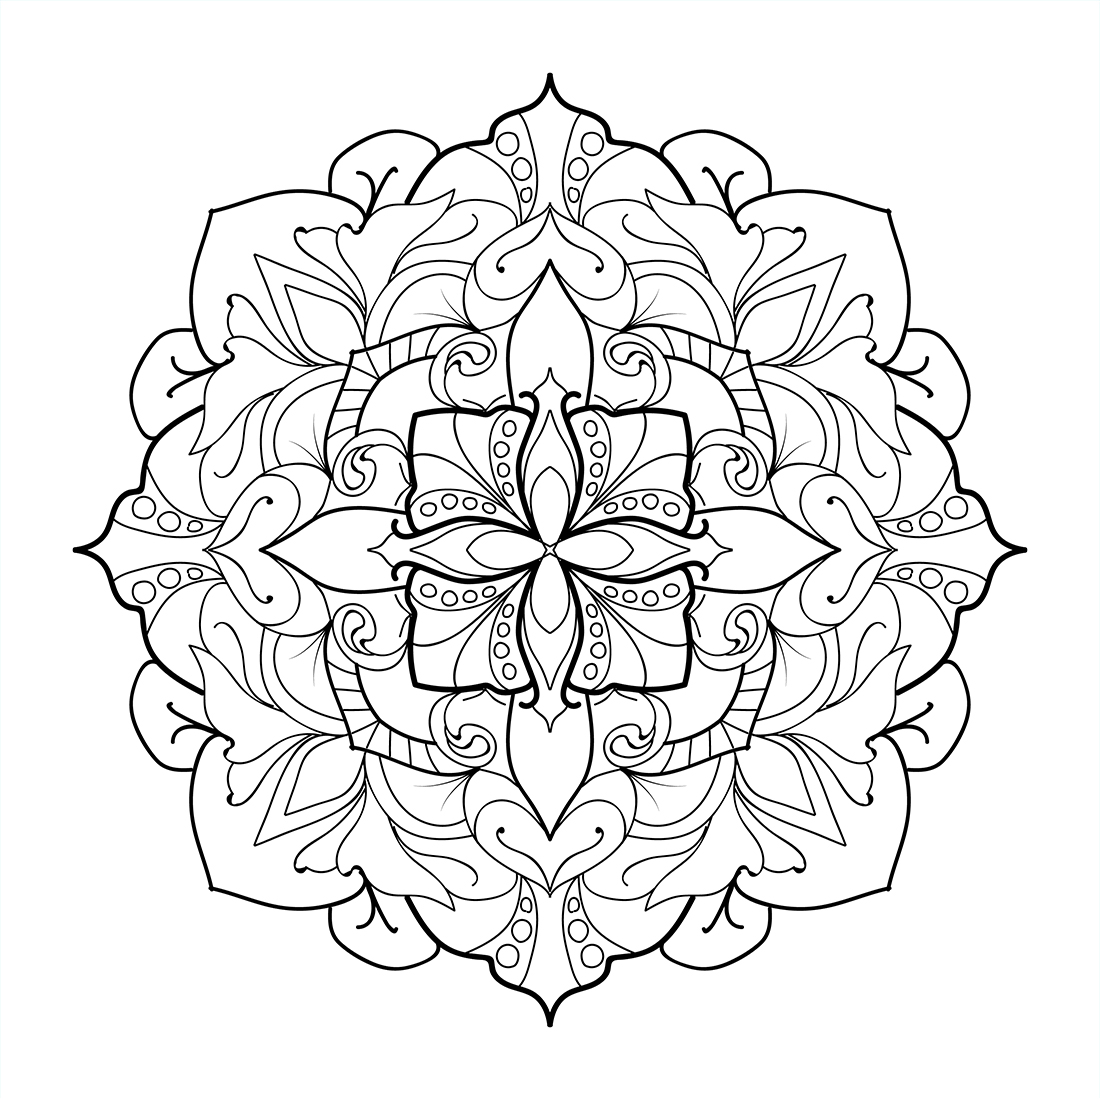 rawing flower designs mandala art, creative mandala art, pencil sketch drawing beautiful creative mandala art cover image.